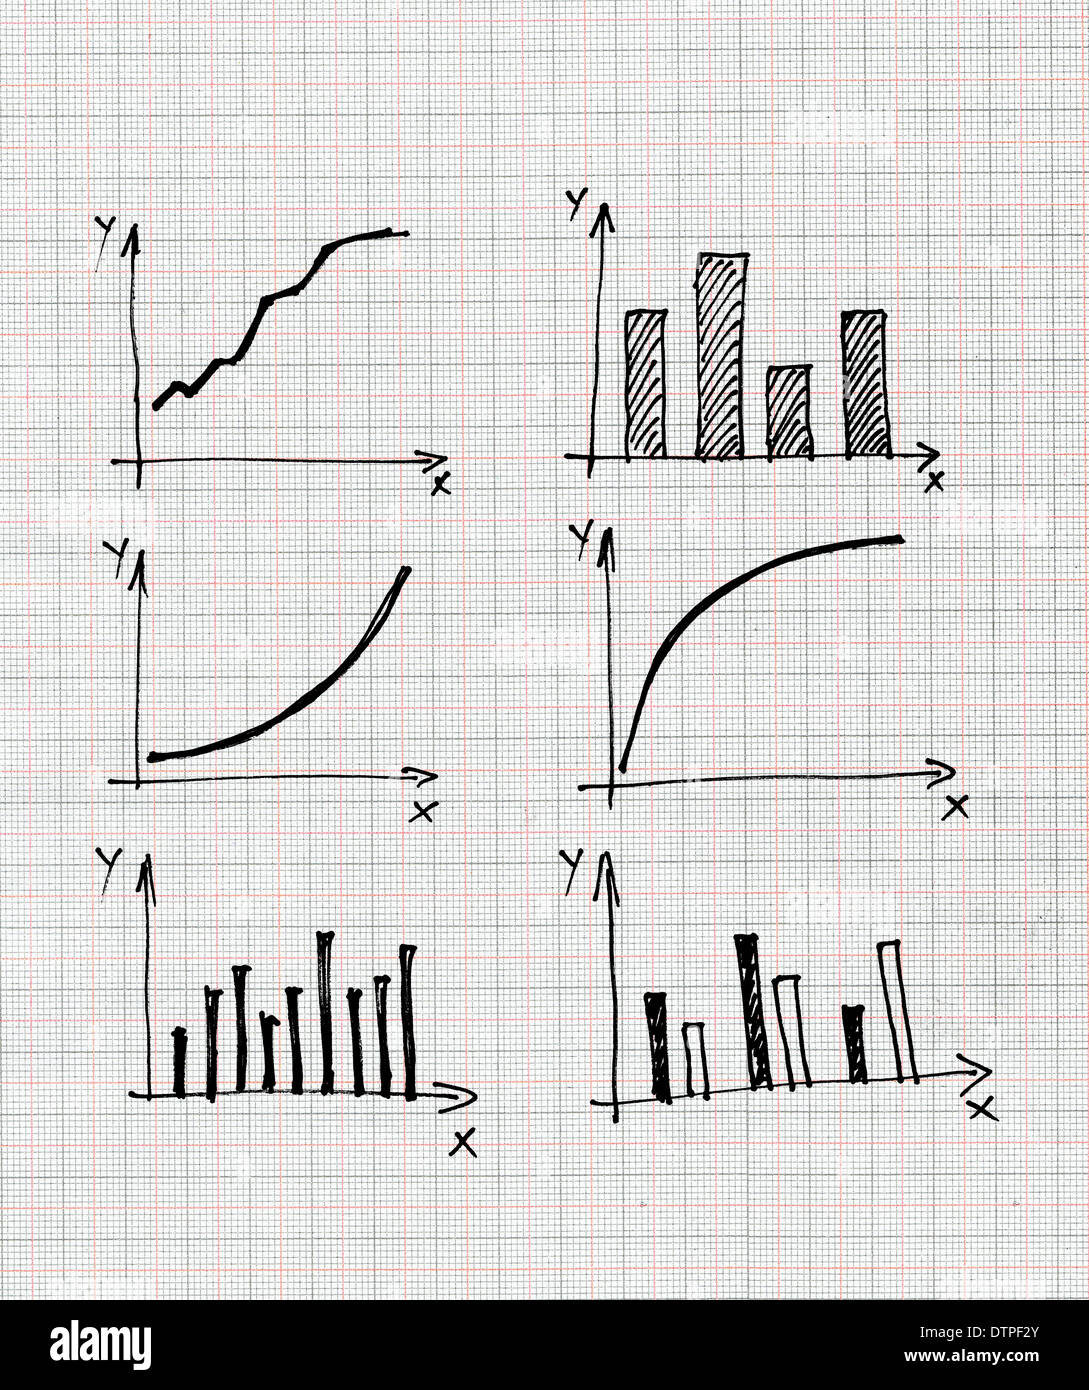 Diagramme und Charts und andere Infografiken Zeichnungen als Design-Elemente-Sammlung. Stockfoto